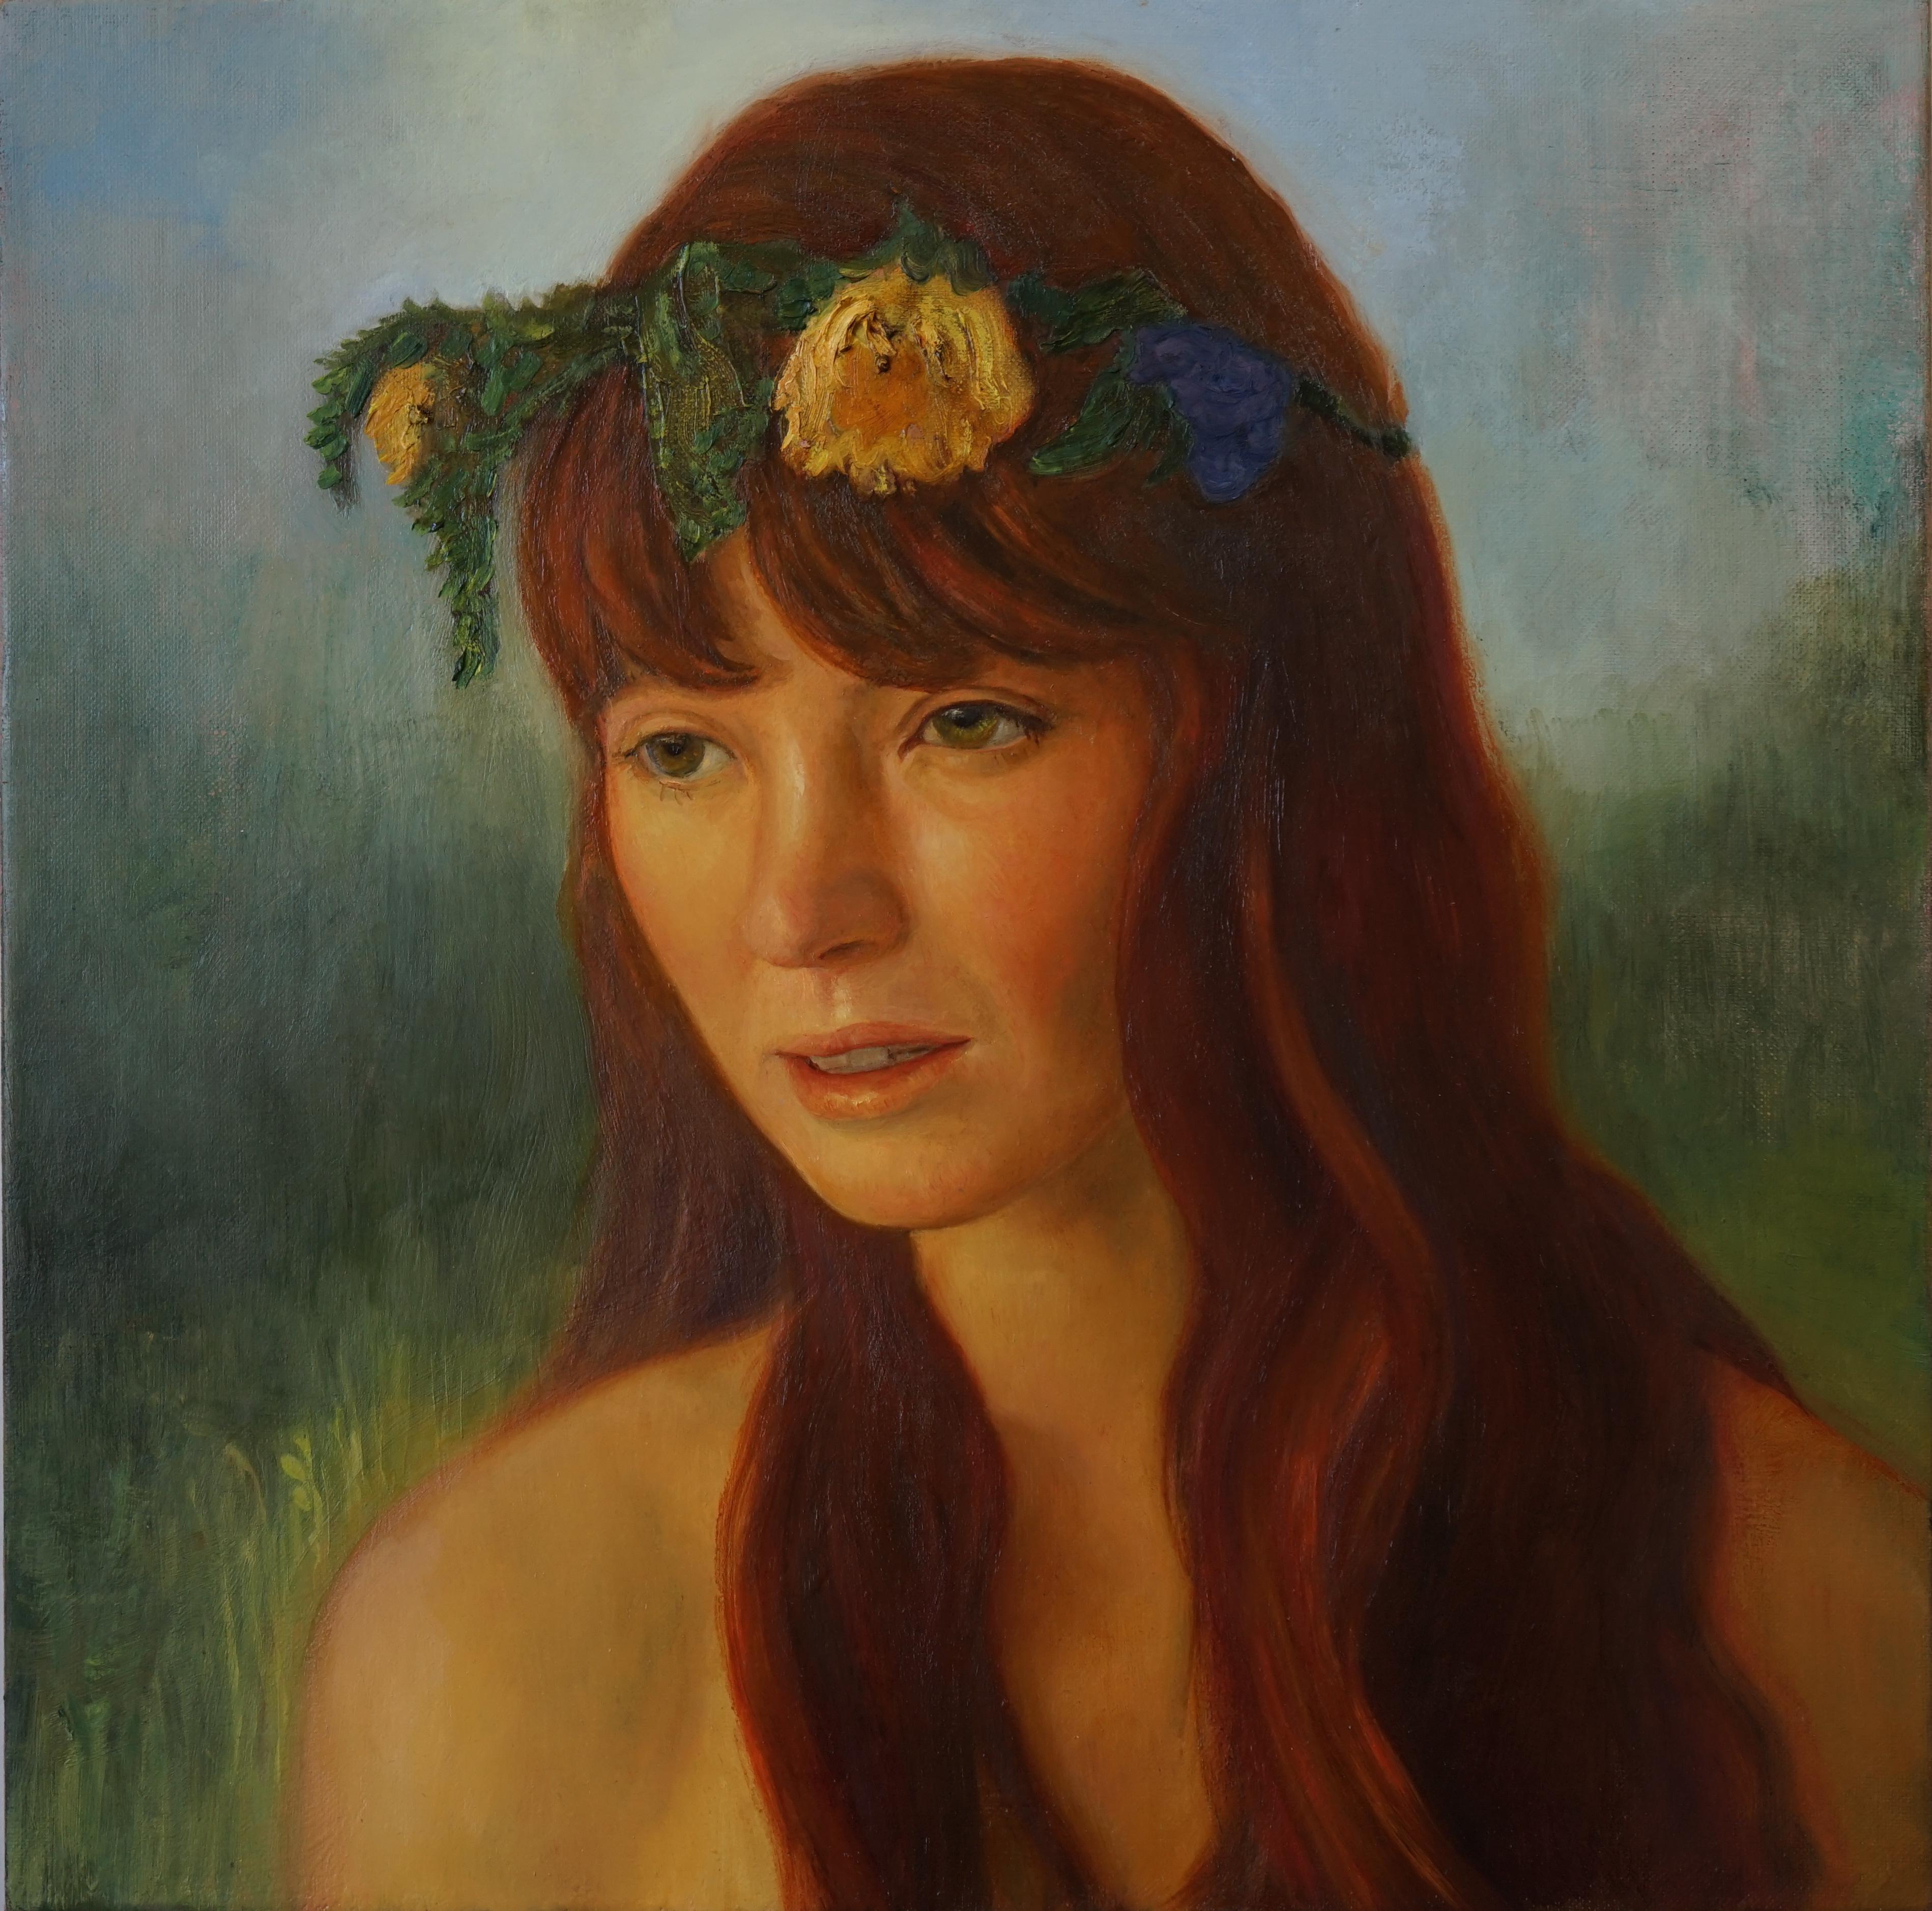 David Molesky Figurative Painting - FLOWER CROWN - woman wearing flower wreath - oil on linen